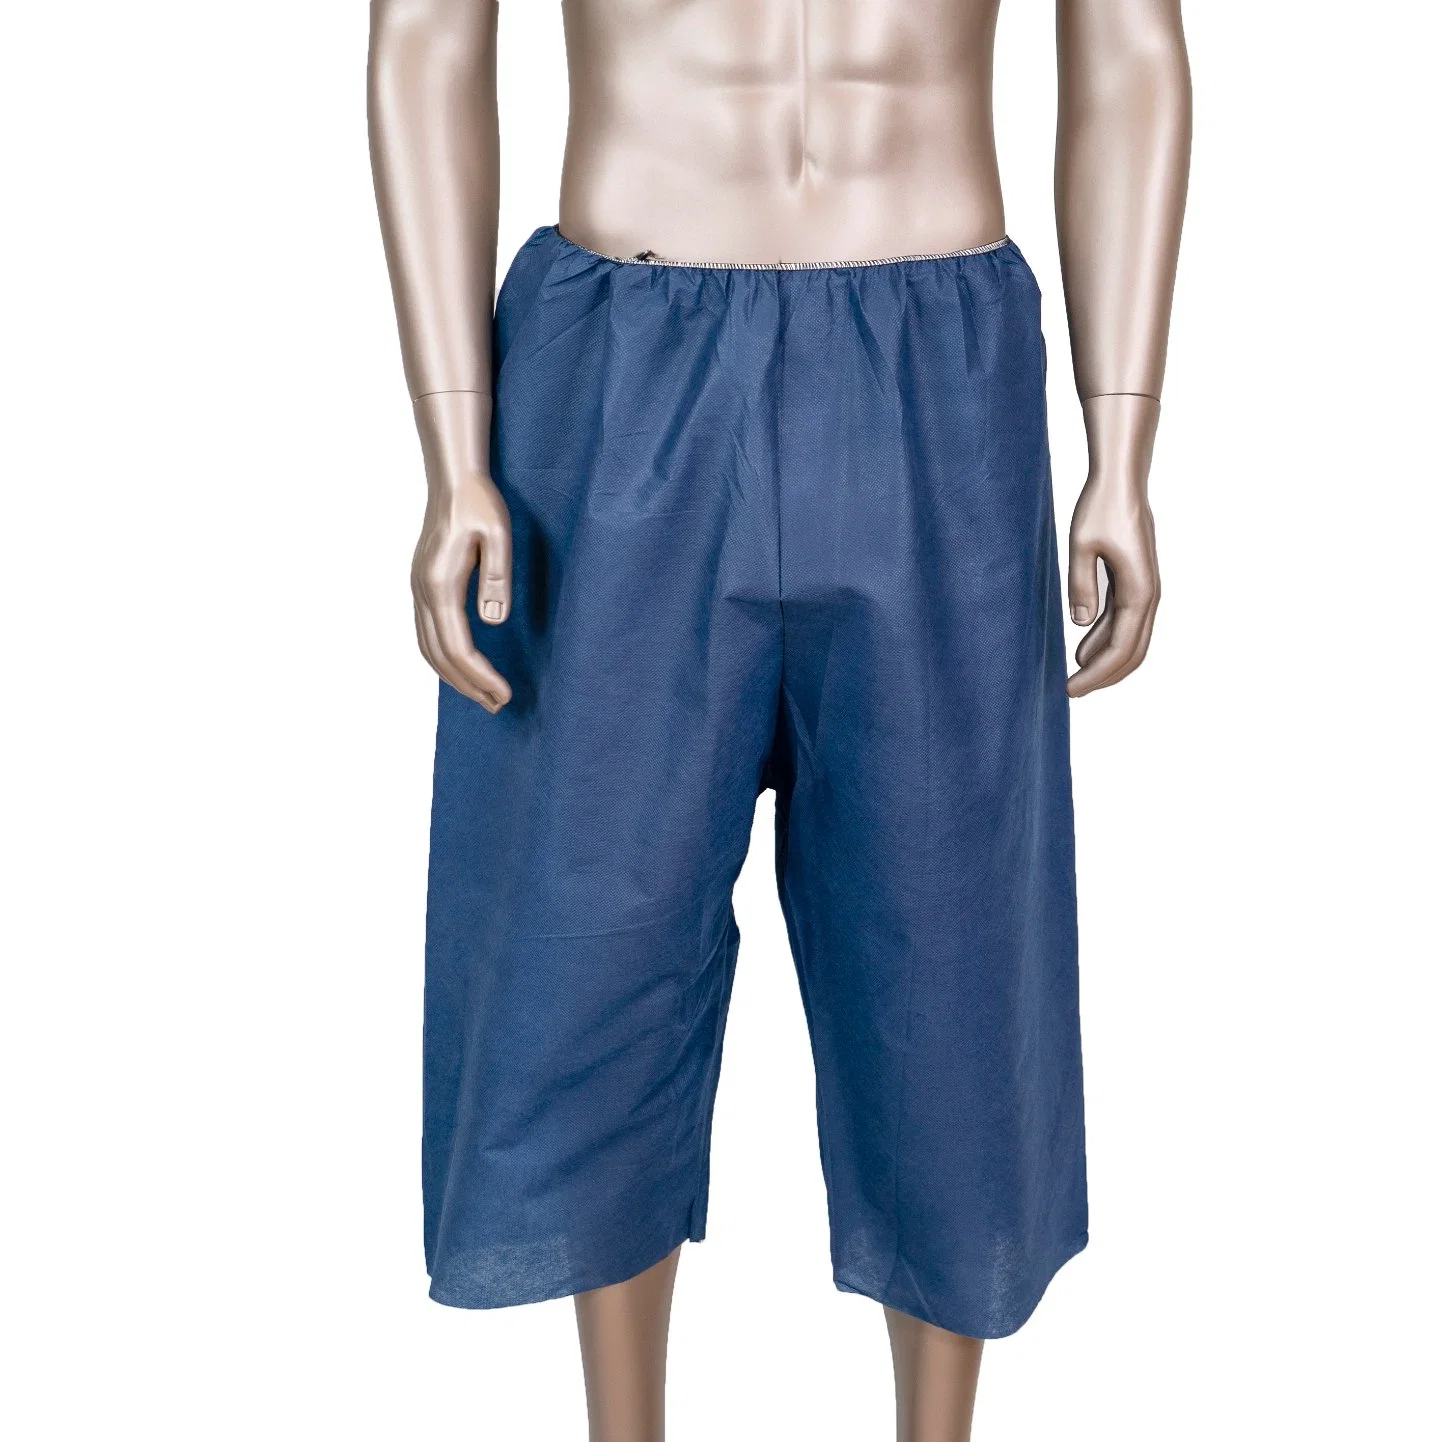 Nonwvoen Short Pants for Man, Disposable Boxer